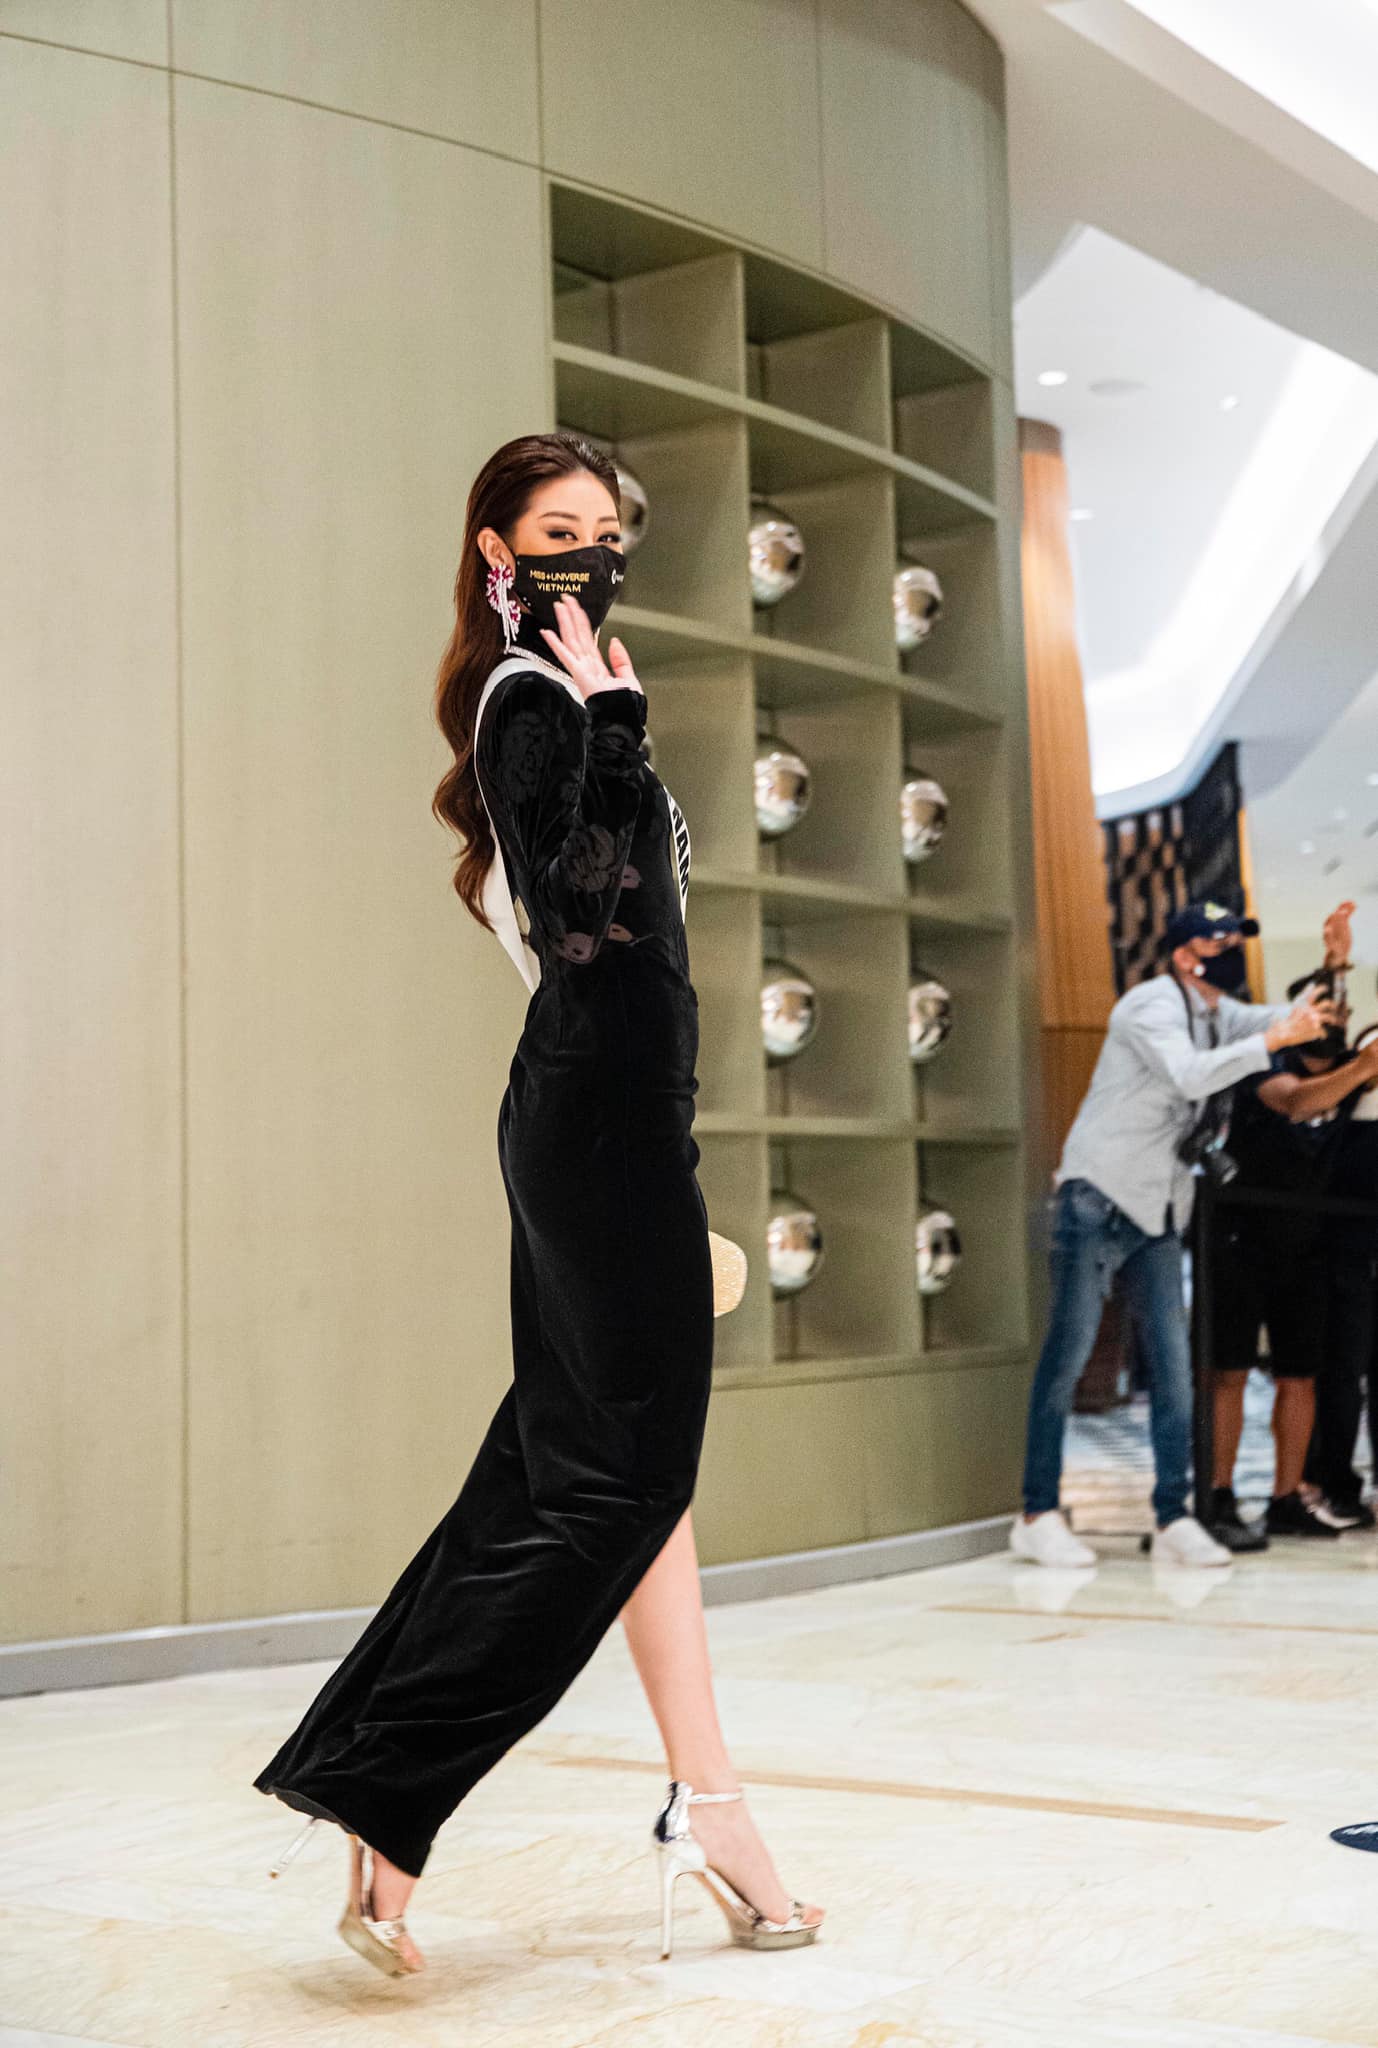 Ngày thứ 7 của Khánh Vân tại Miss Universe: Trang phục ngày càng hầm hố, khẳng định đẳng cấp ‘không phải dạng vừa’ 2